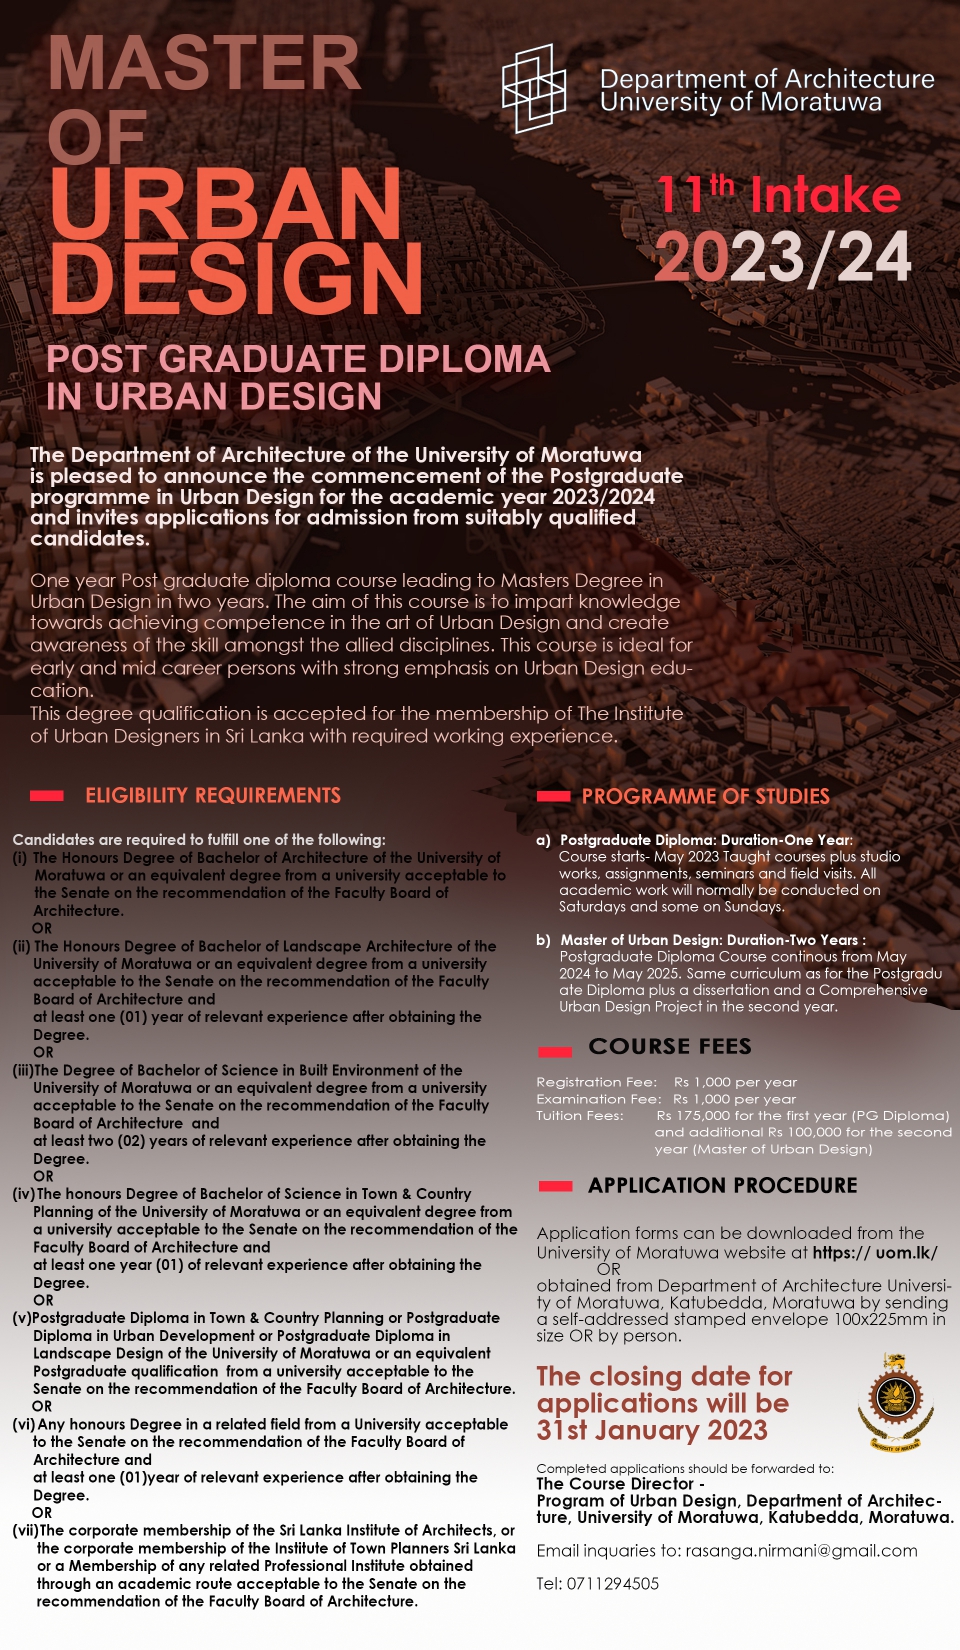 MSc/PG Diploma in Urban Design